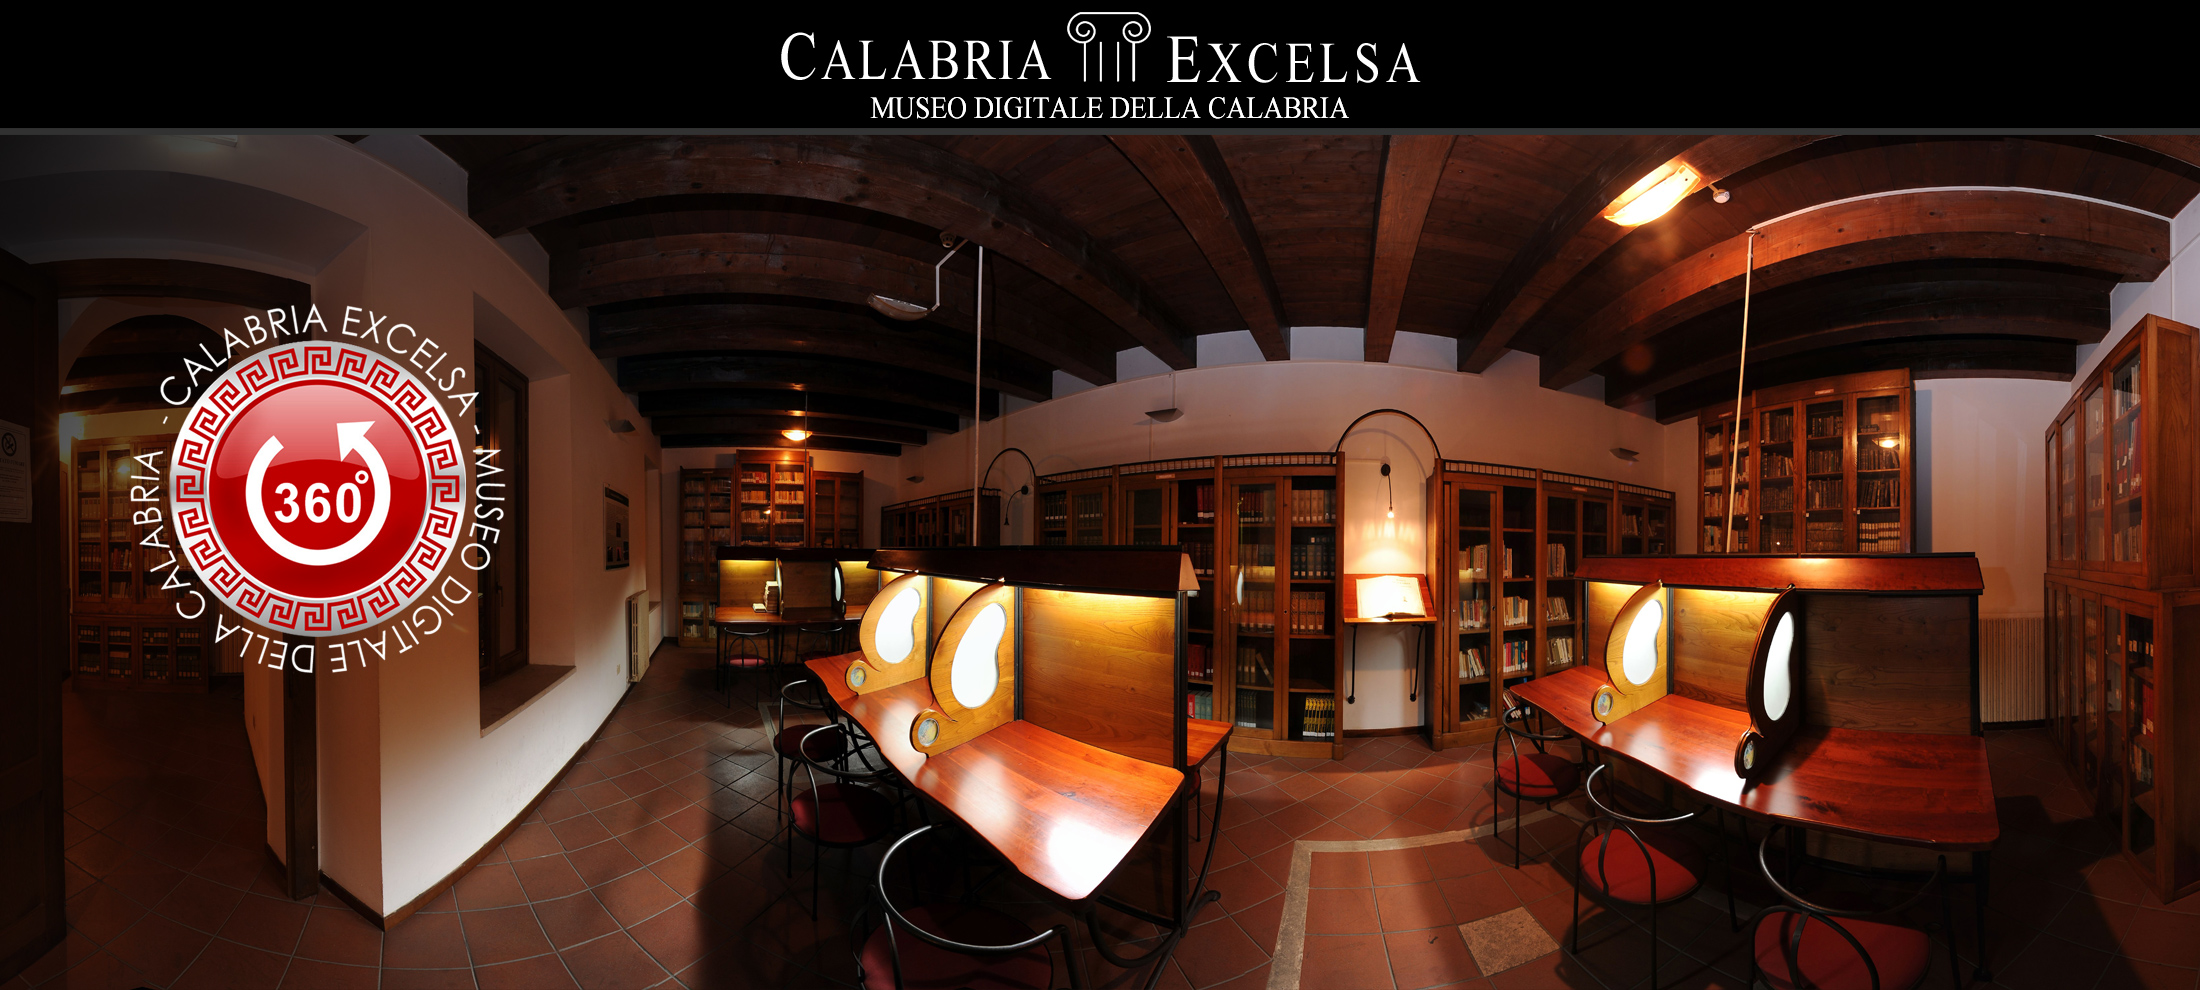 Museo Digitale della Calabria CALABRIAEXCELSA - Museo di Cetraro Biblioteca Civica Virtual 2